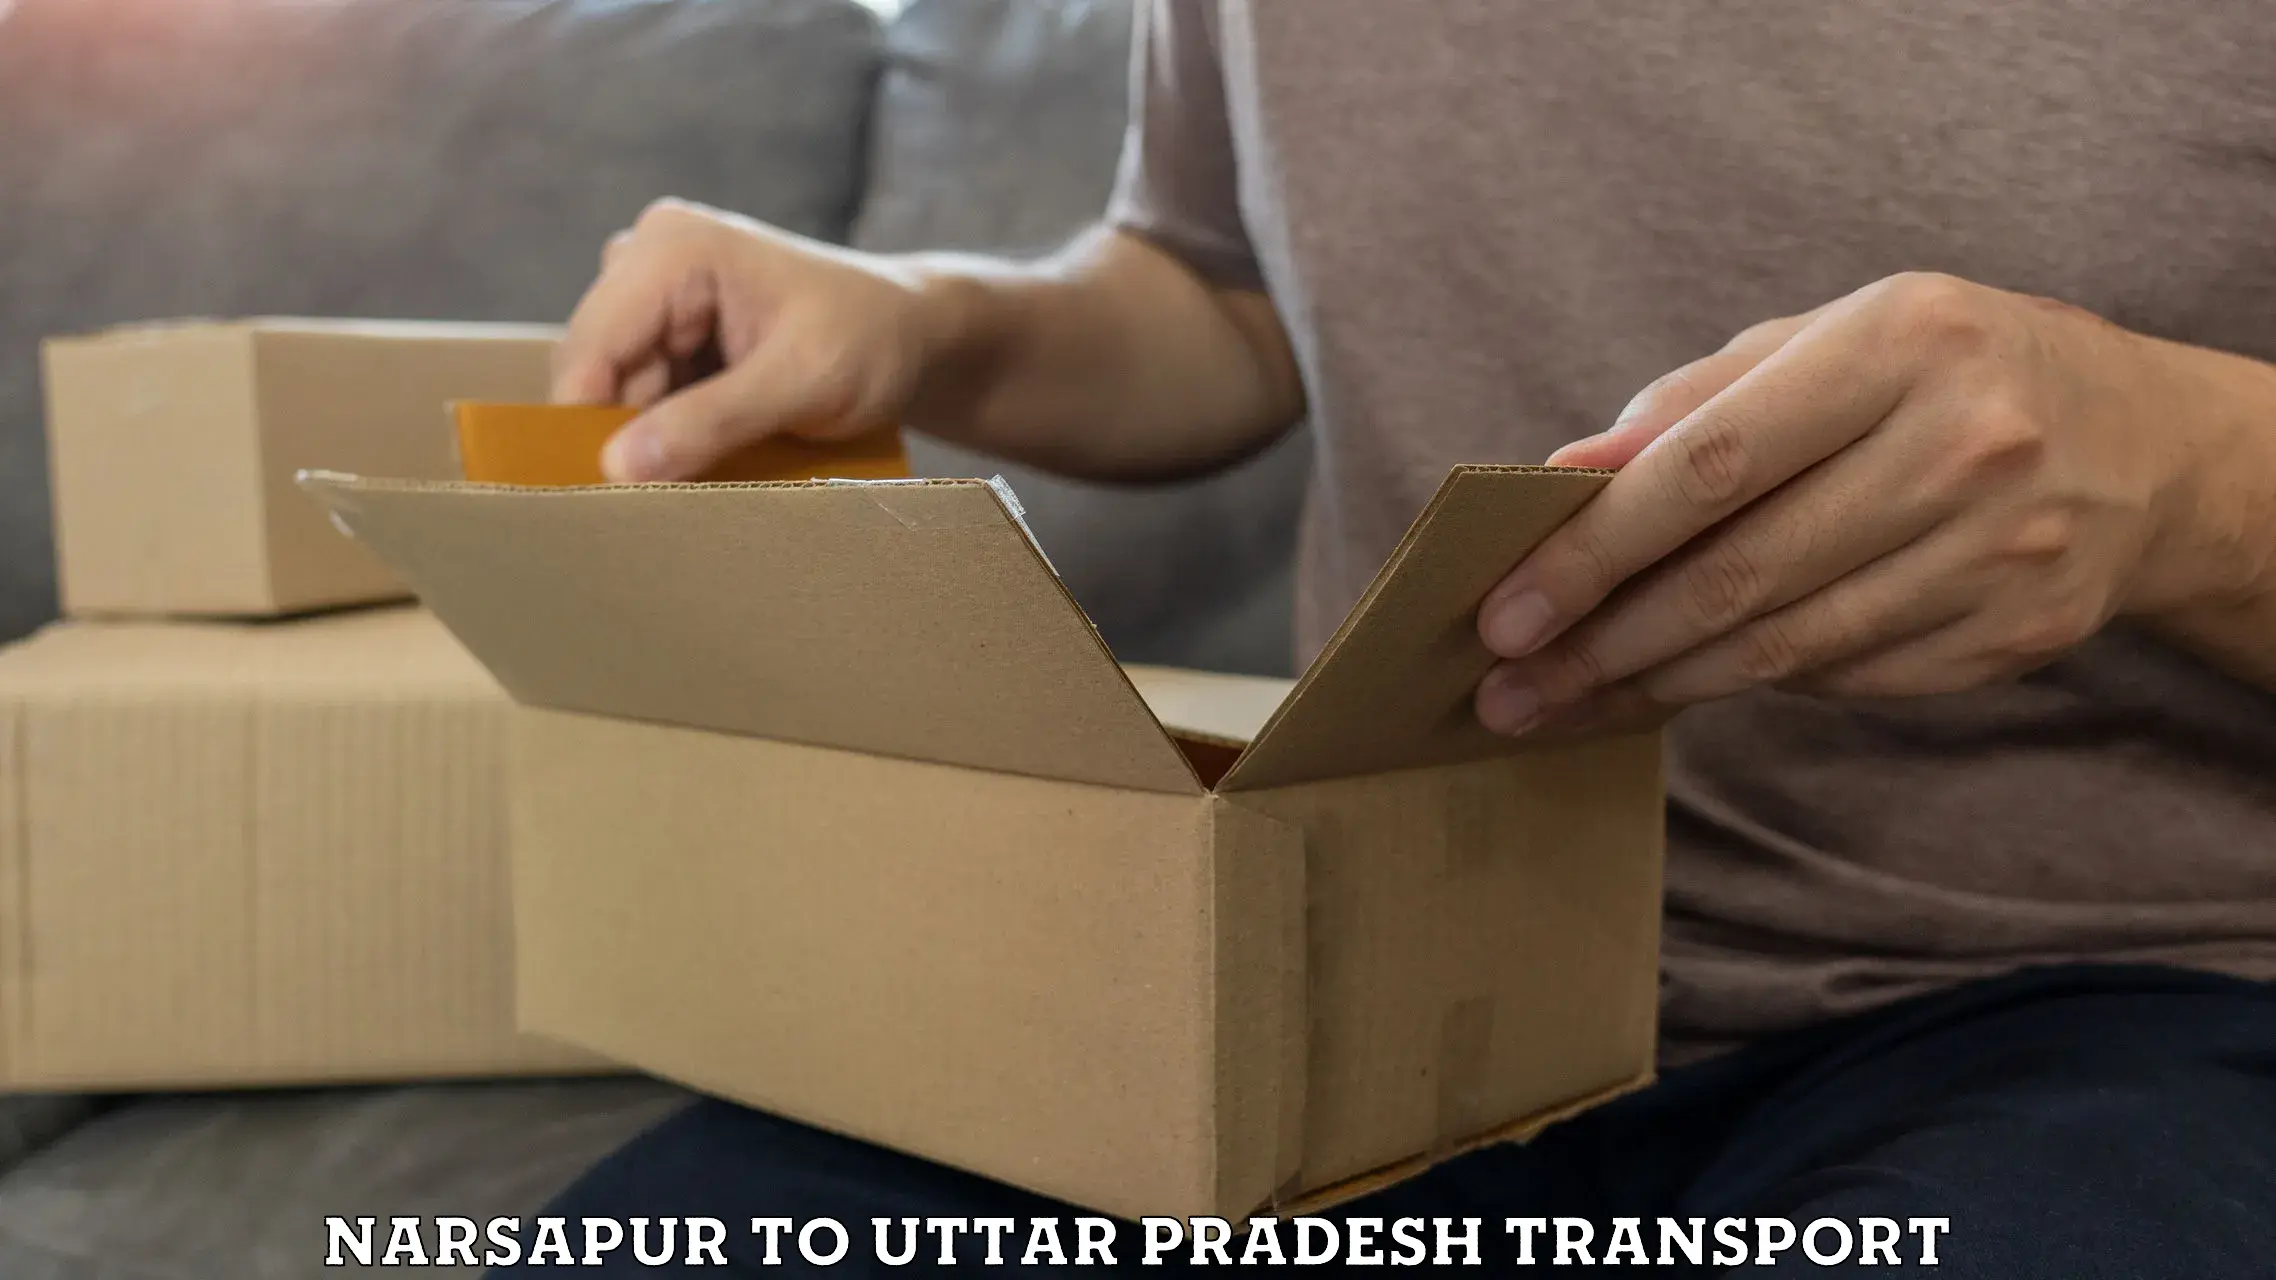 Parcel transport services Narsapur to IIT Varanasi